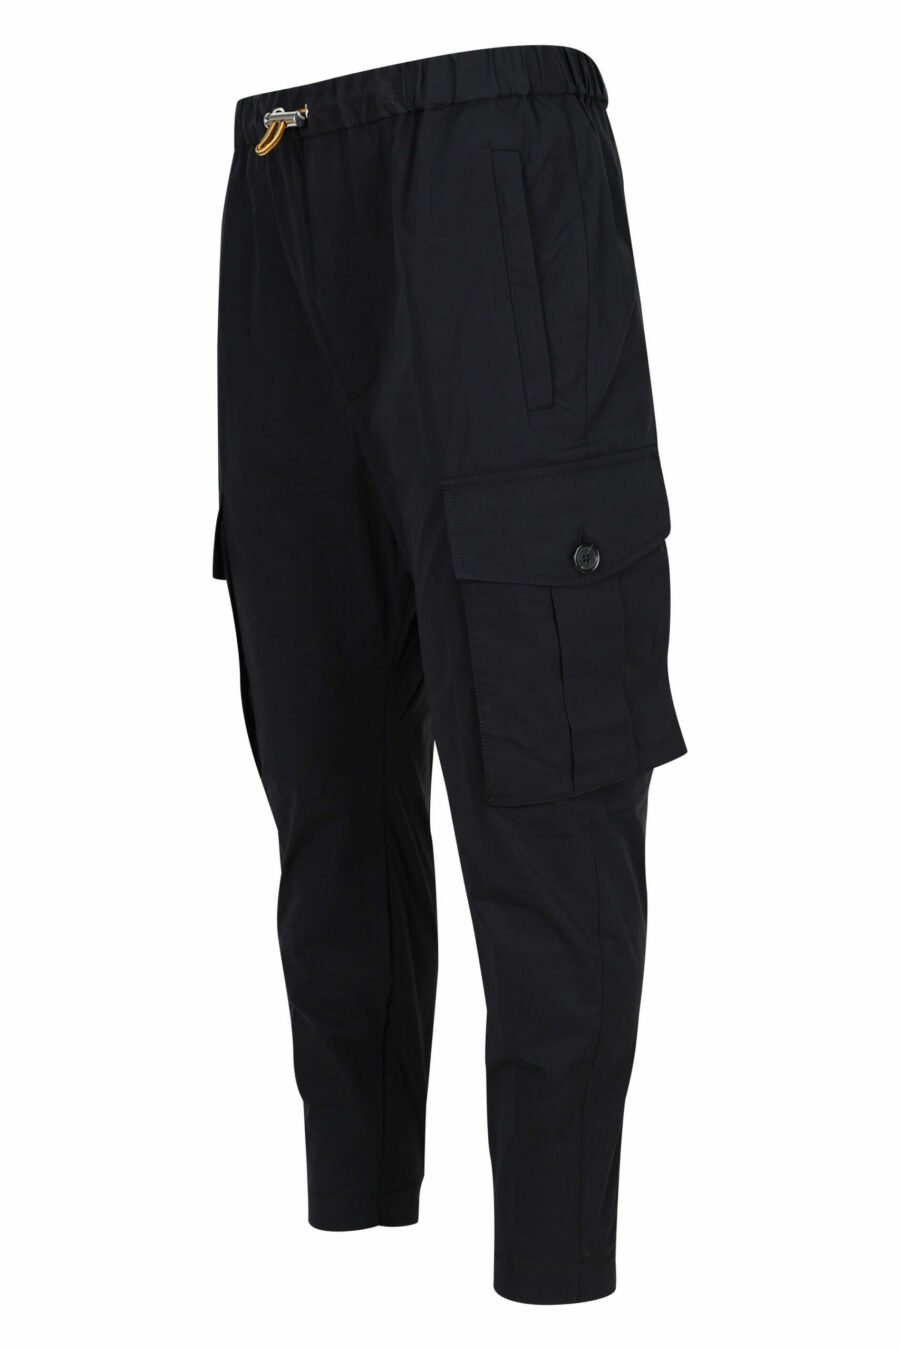 Pantalón negro " pully pant" - 8054148060992 1 scaled